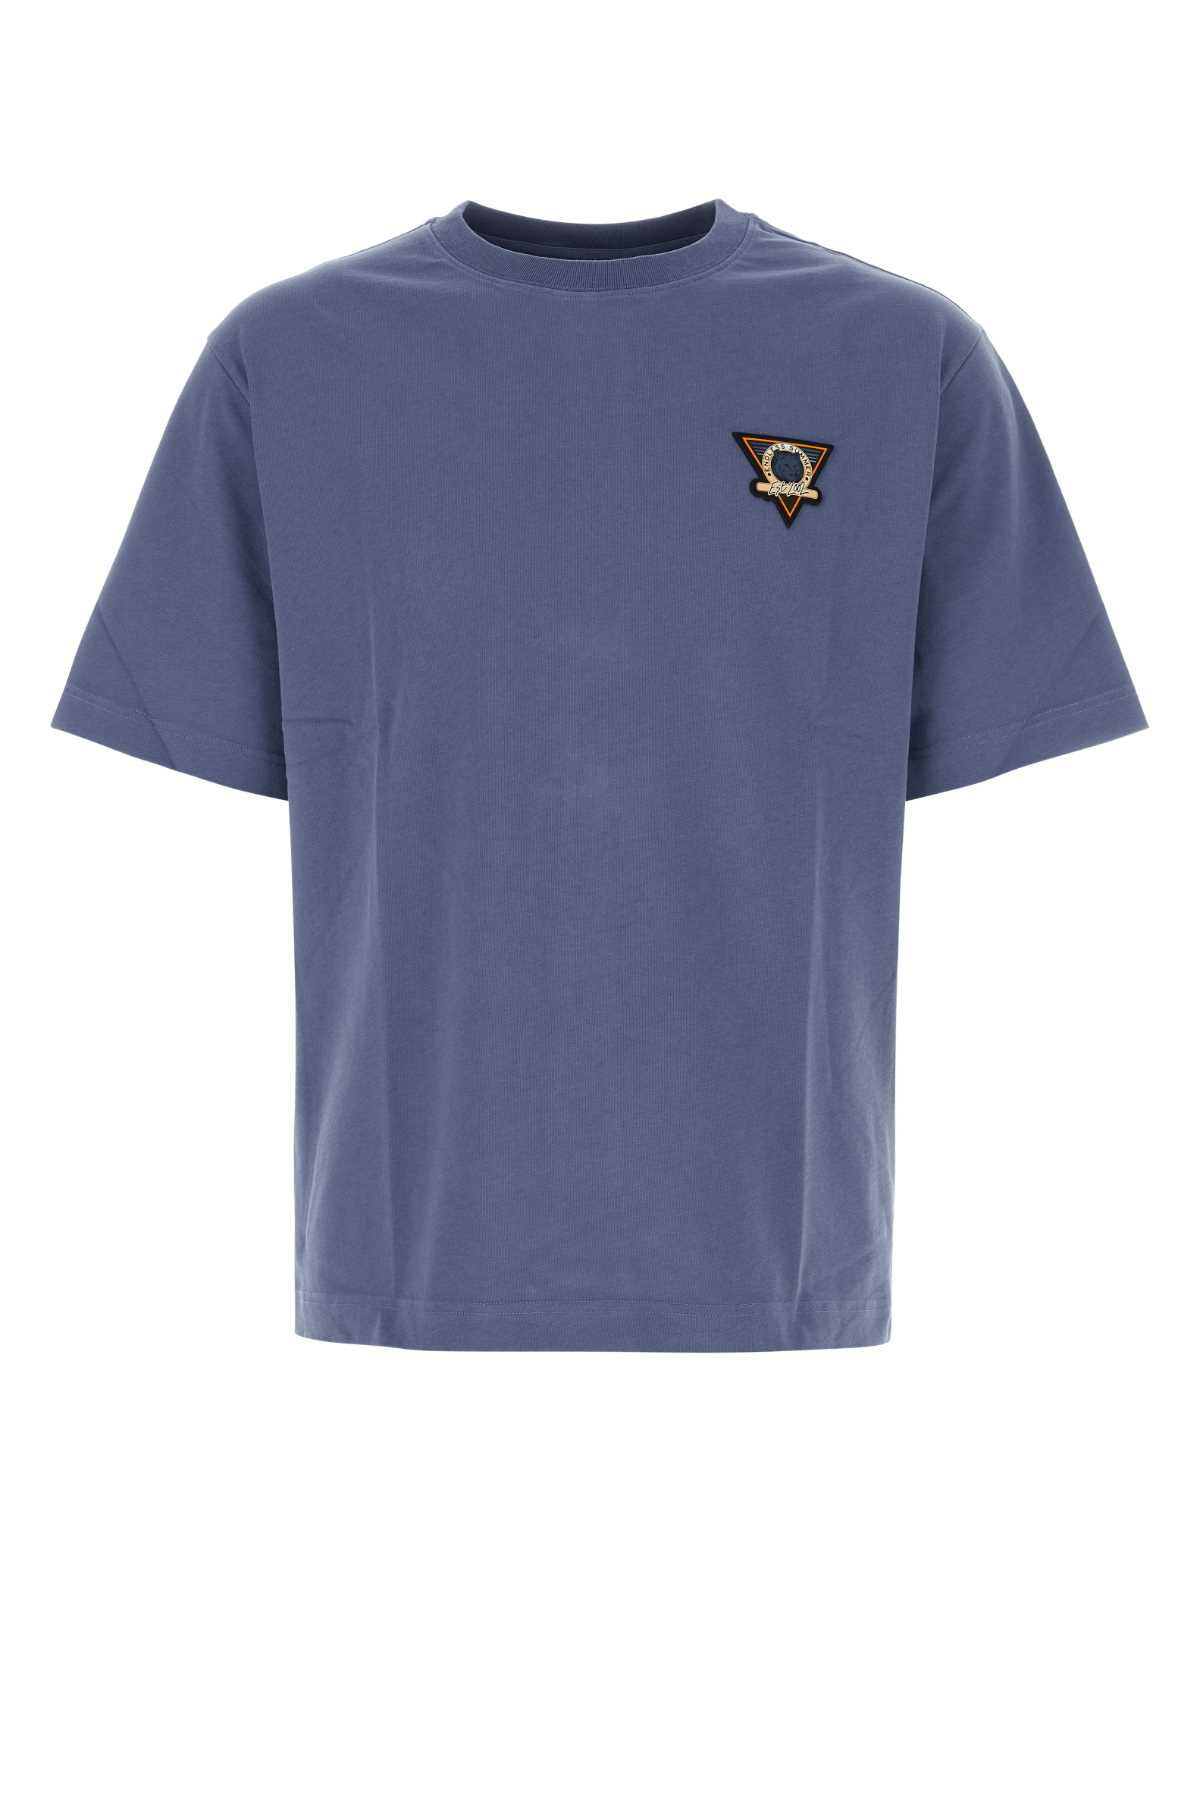 Maison Kitsuné Air Force Blue Cotton Oversize T-shirt